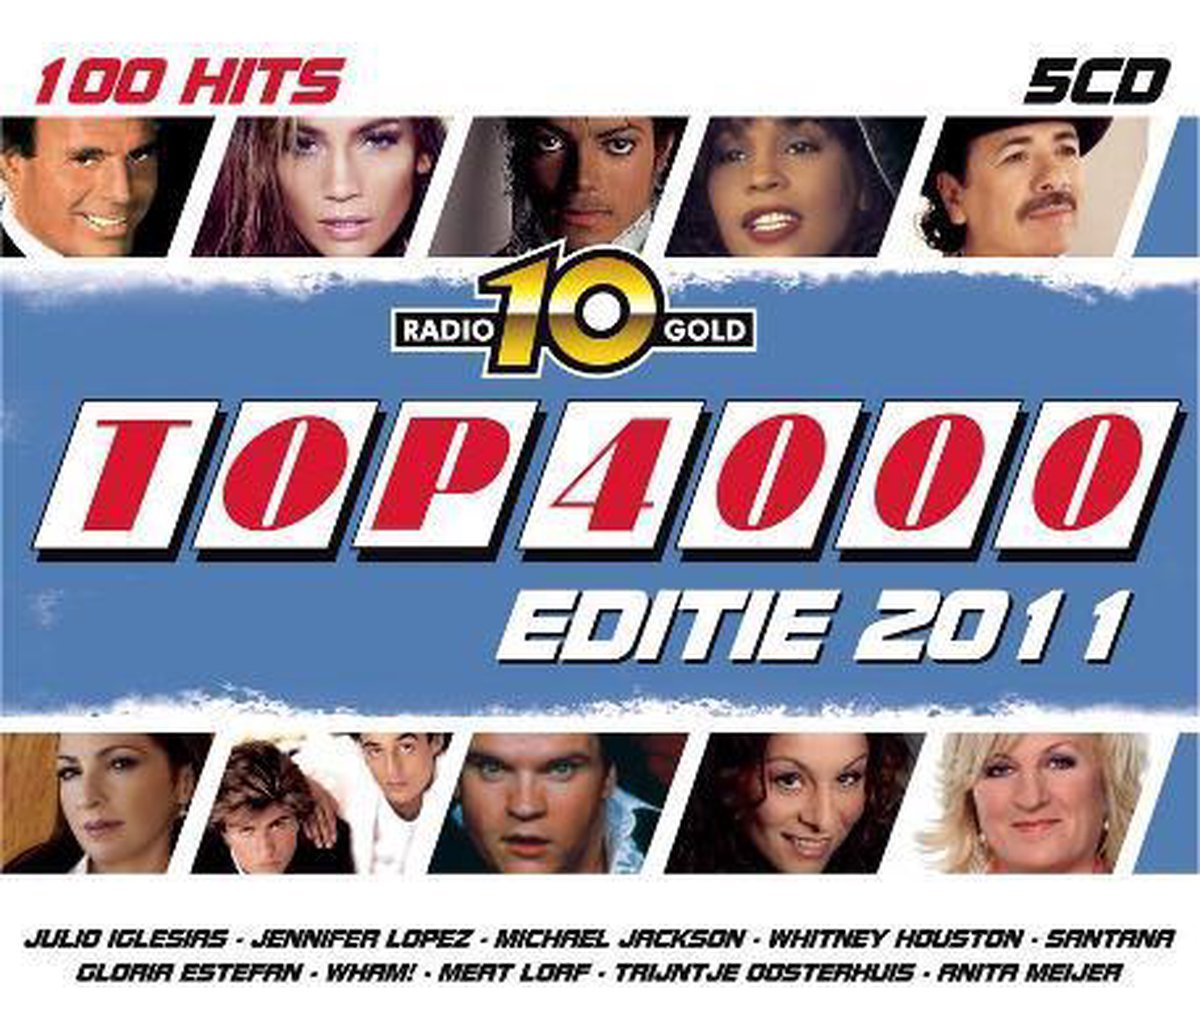 Radio 10 Gold Top 4000 Editie 2011, Radio 10 | CD (album) | Muziek | bol.com